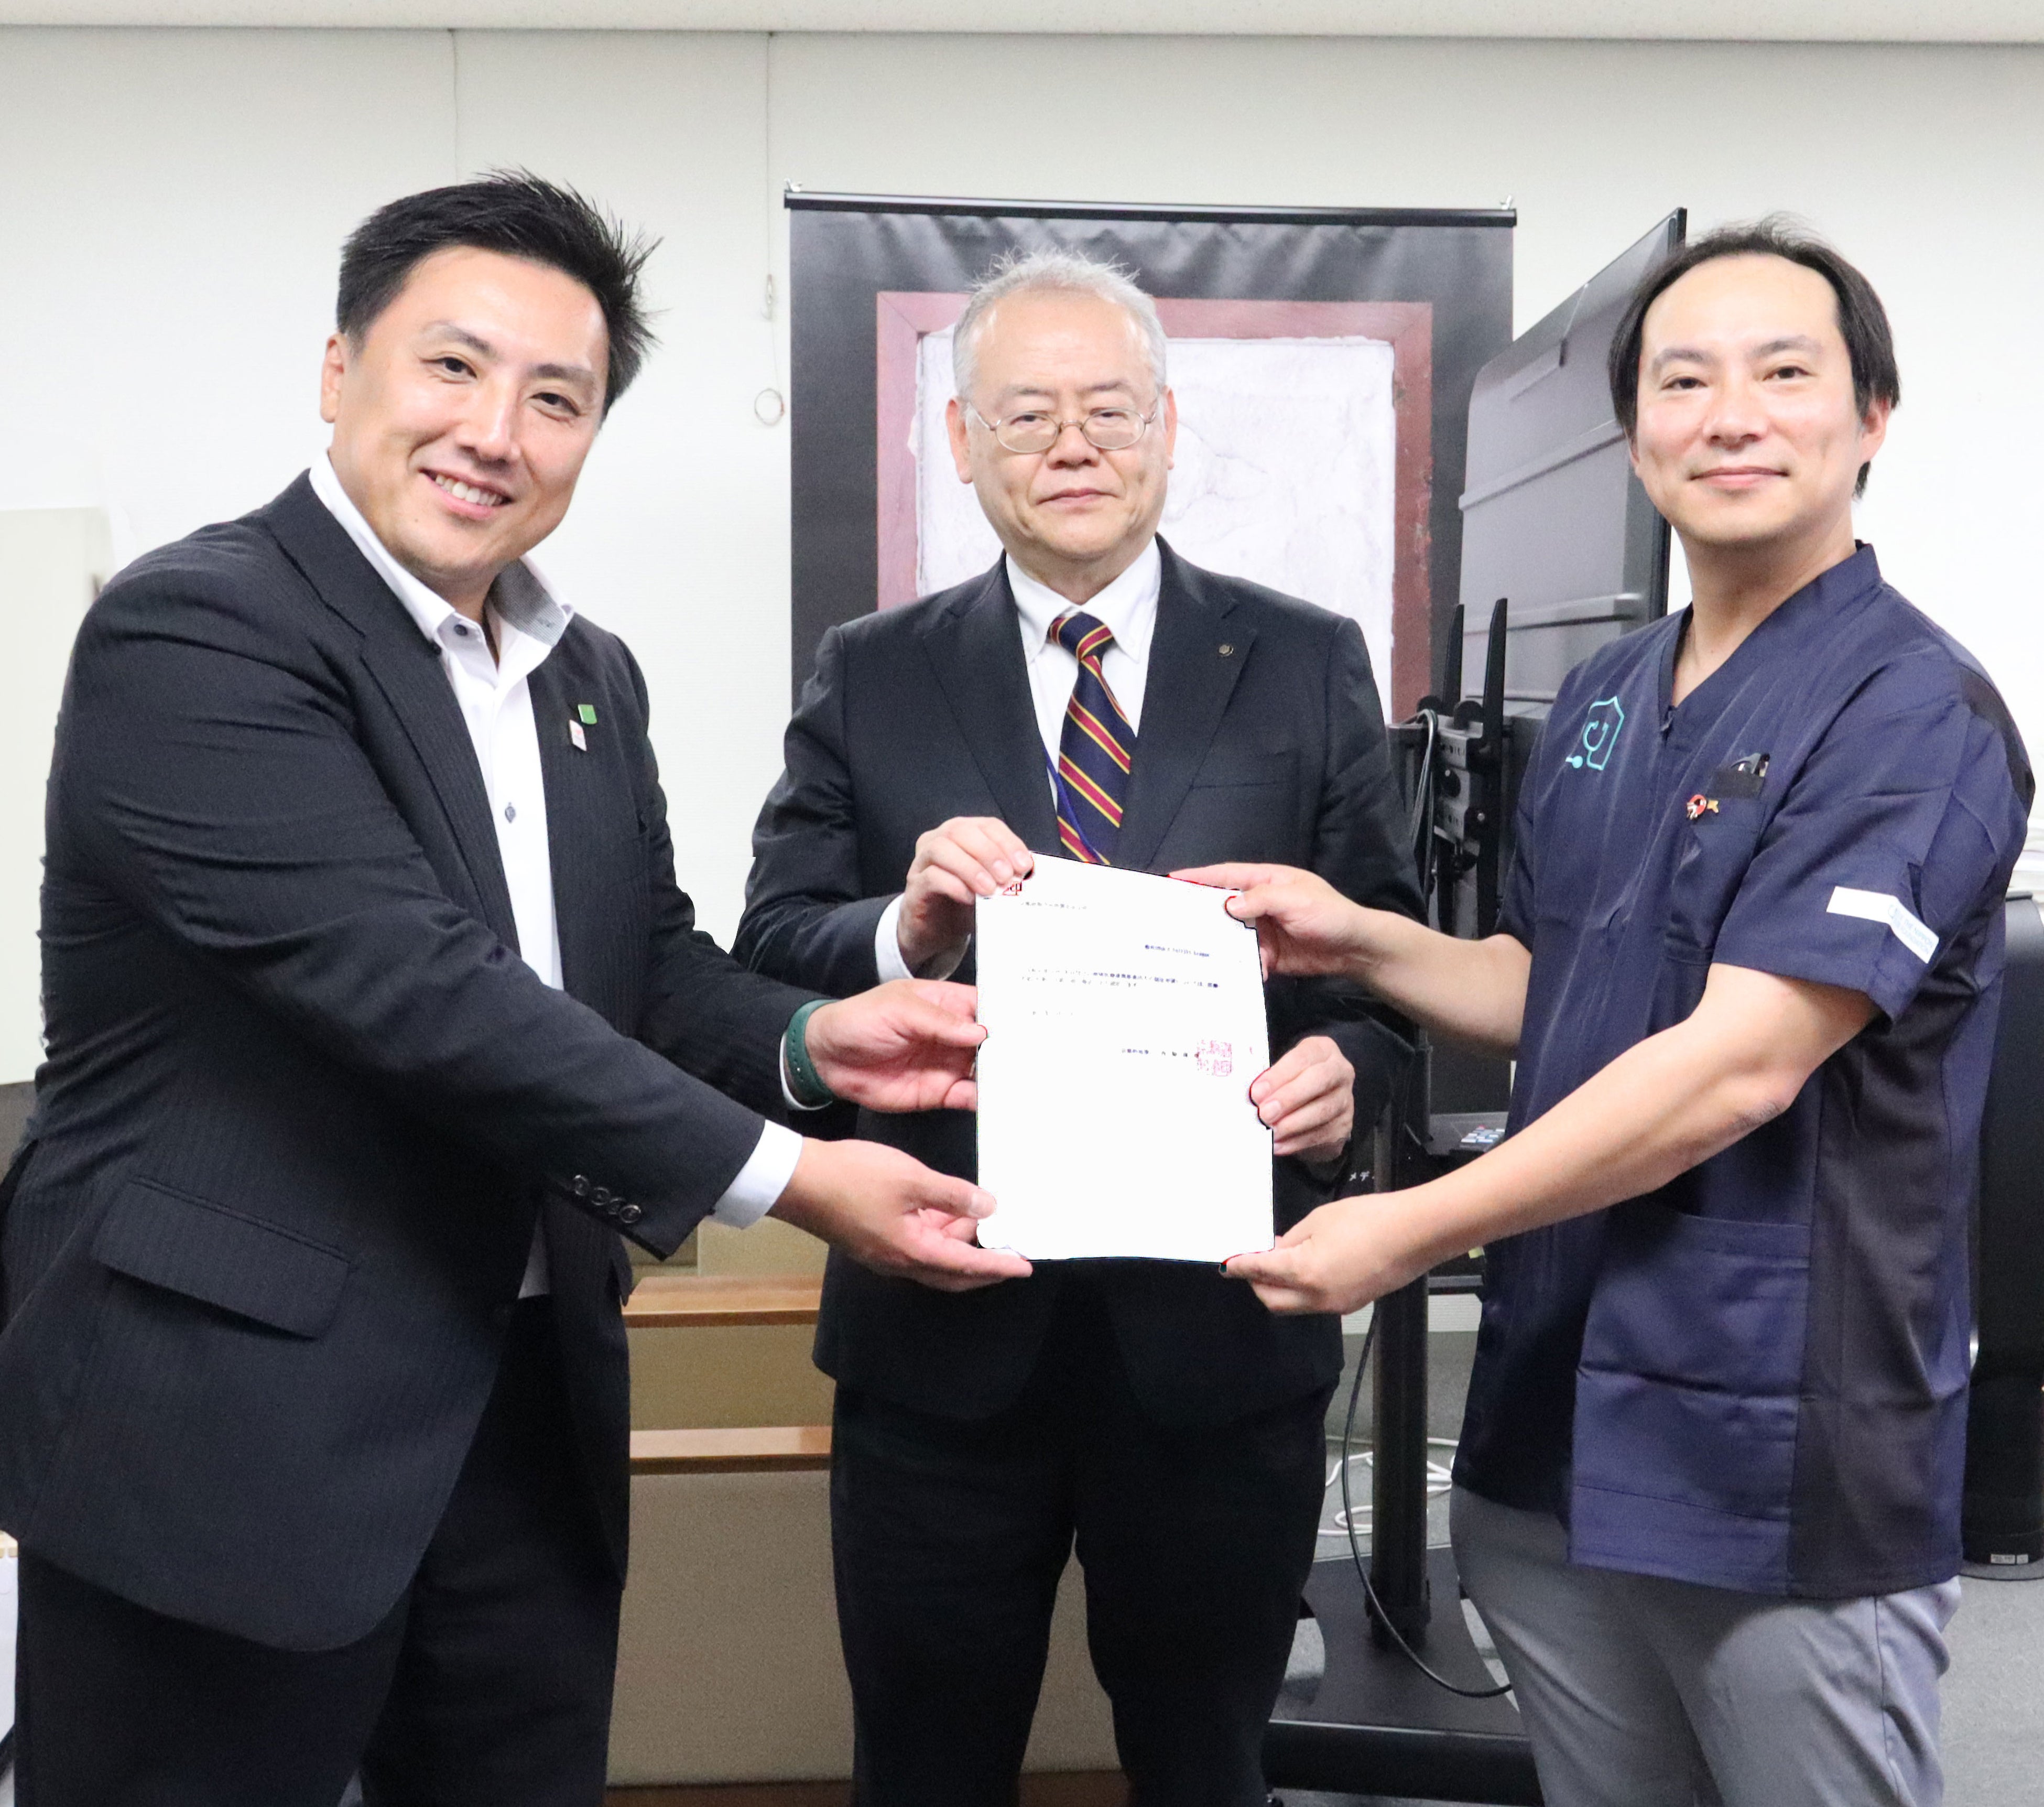 京都府で初めて地域医療連携推進法人として認定